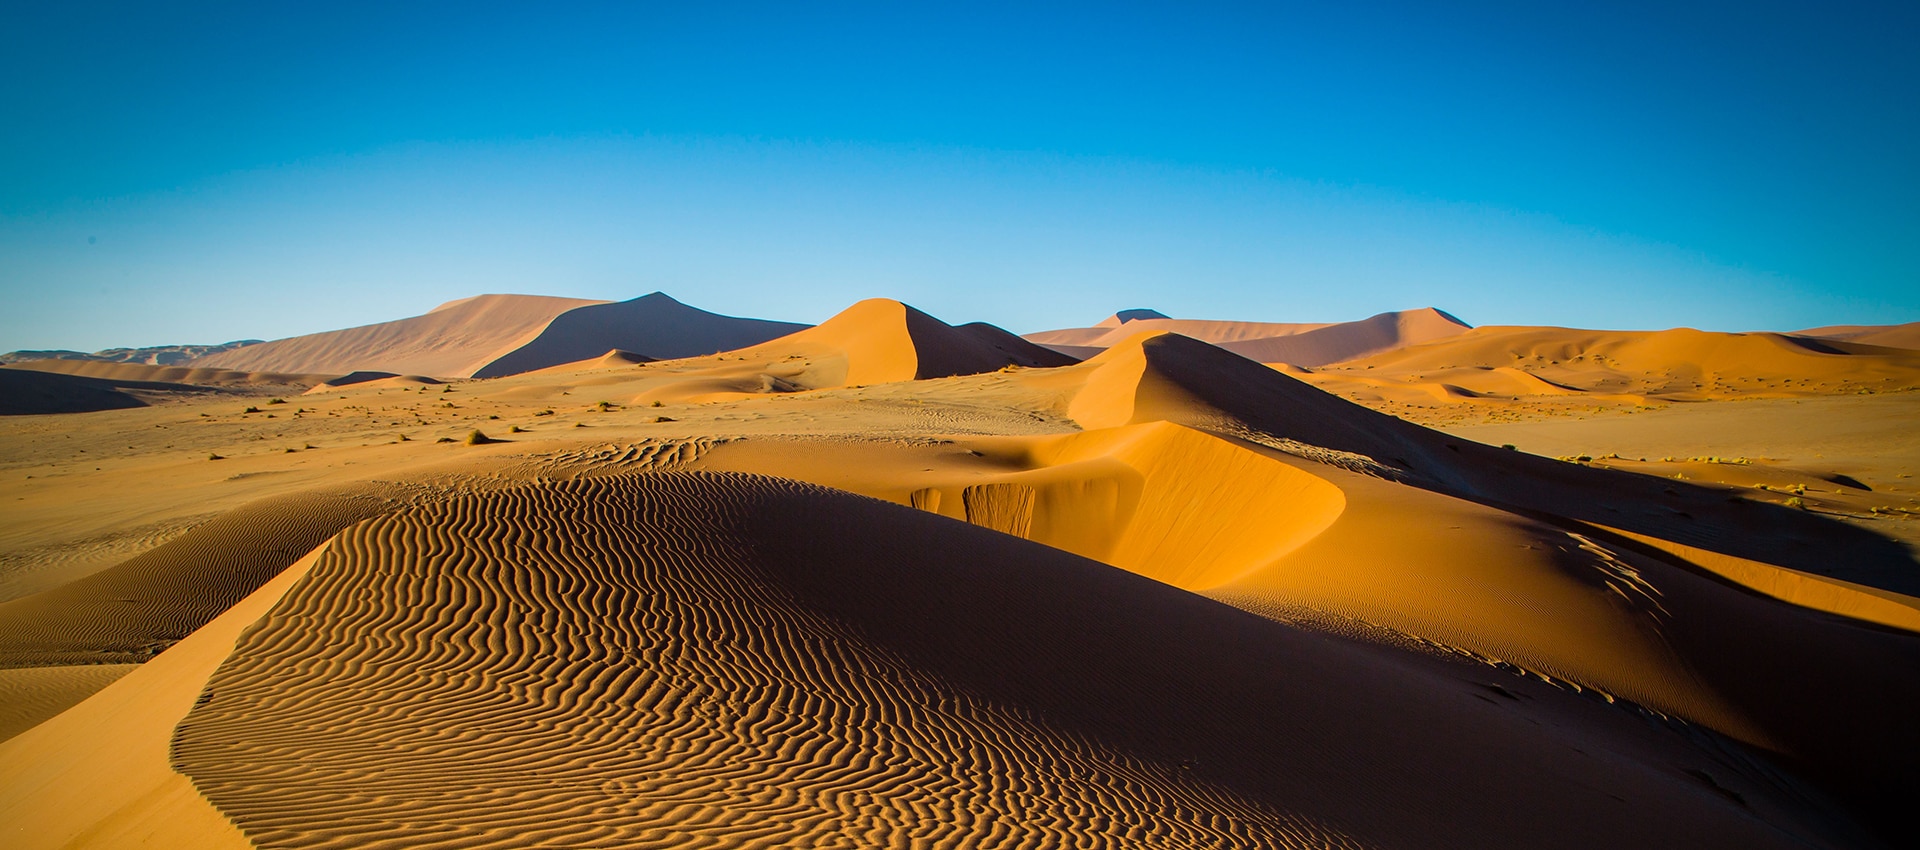 how-we-filmed-in-the-desert-bbc-earth